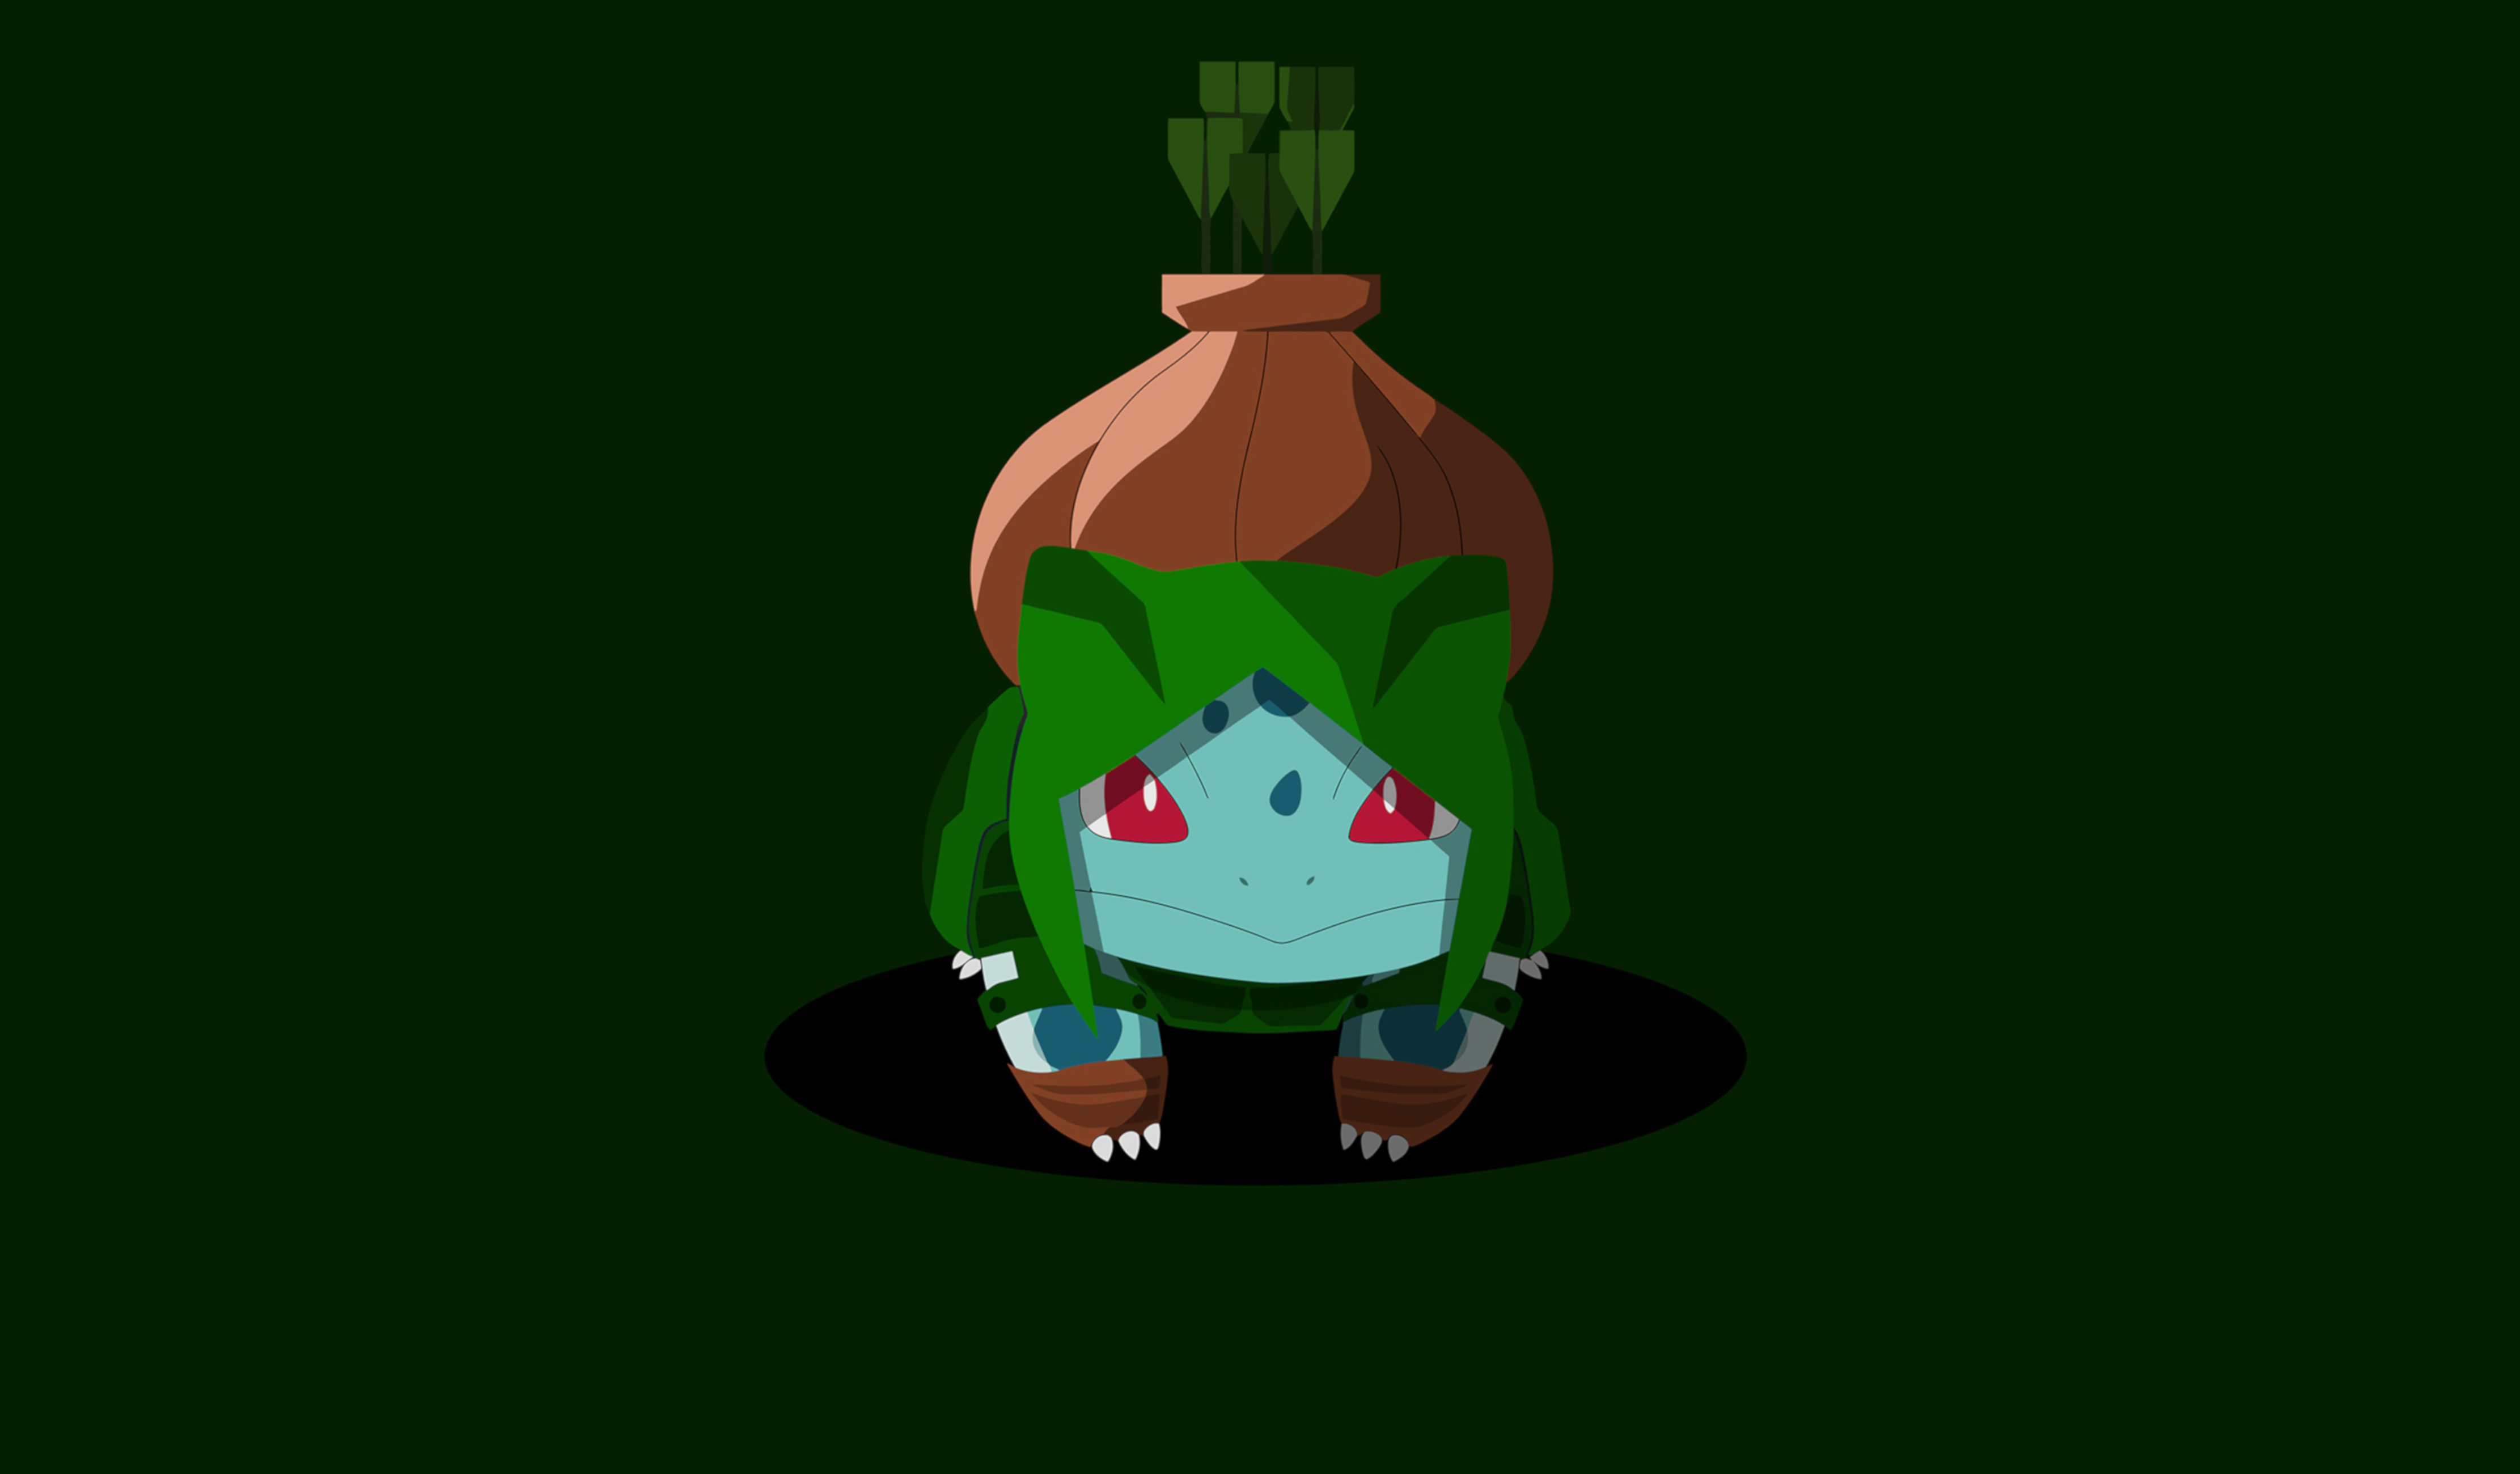 Bulbasaur (Pokémon) by BossLogic